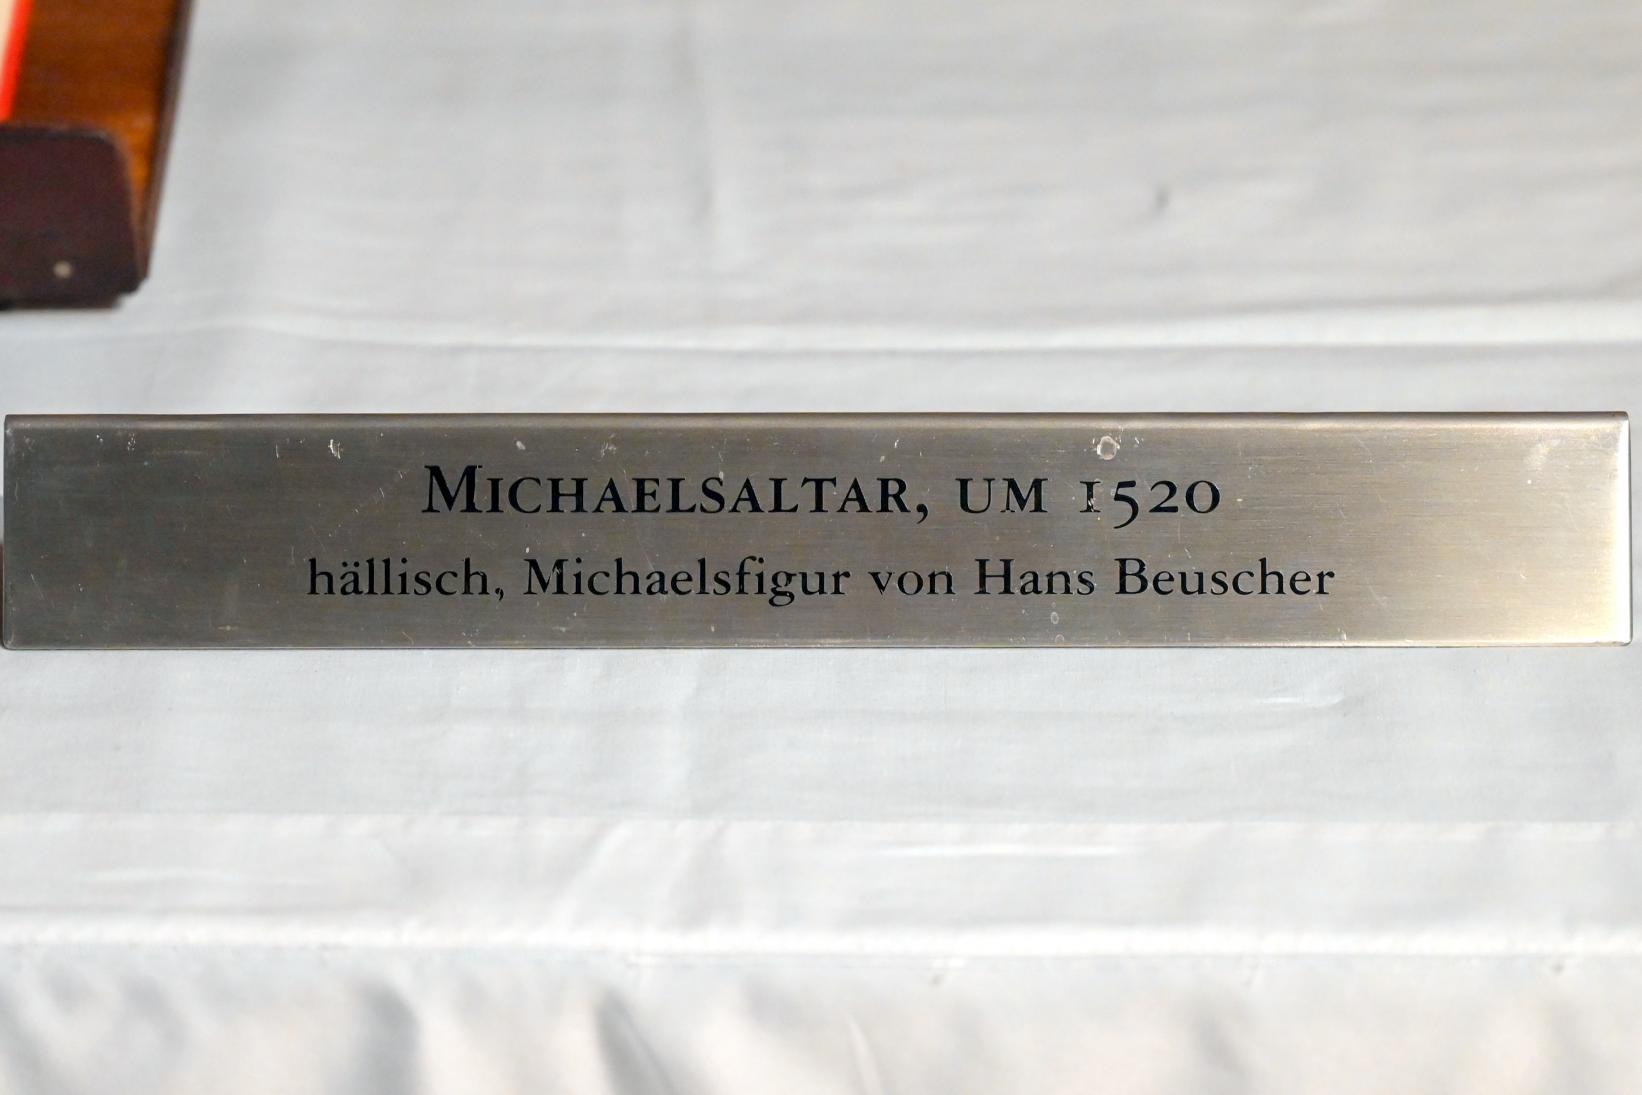 Hans Beuscher (1519), Heiliger Michael im Schrein des Michaelaltars, Schwäbisch Hall, evangelische Stadtpfarrkirche St. Michael, vor 1520, Bild 4/4